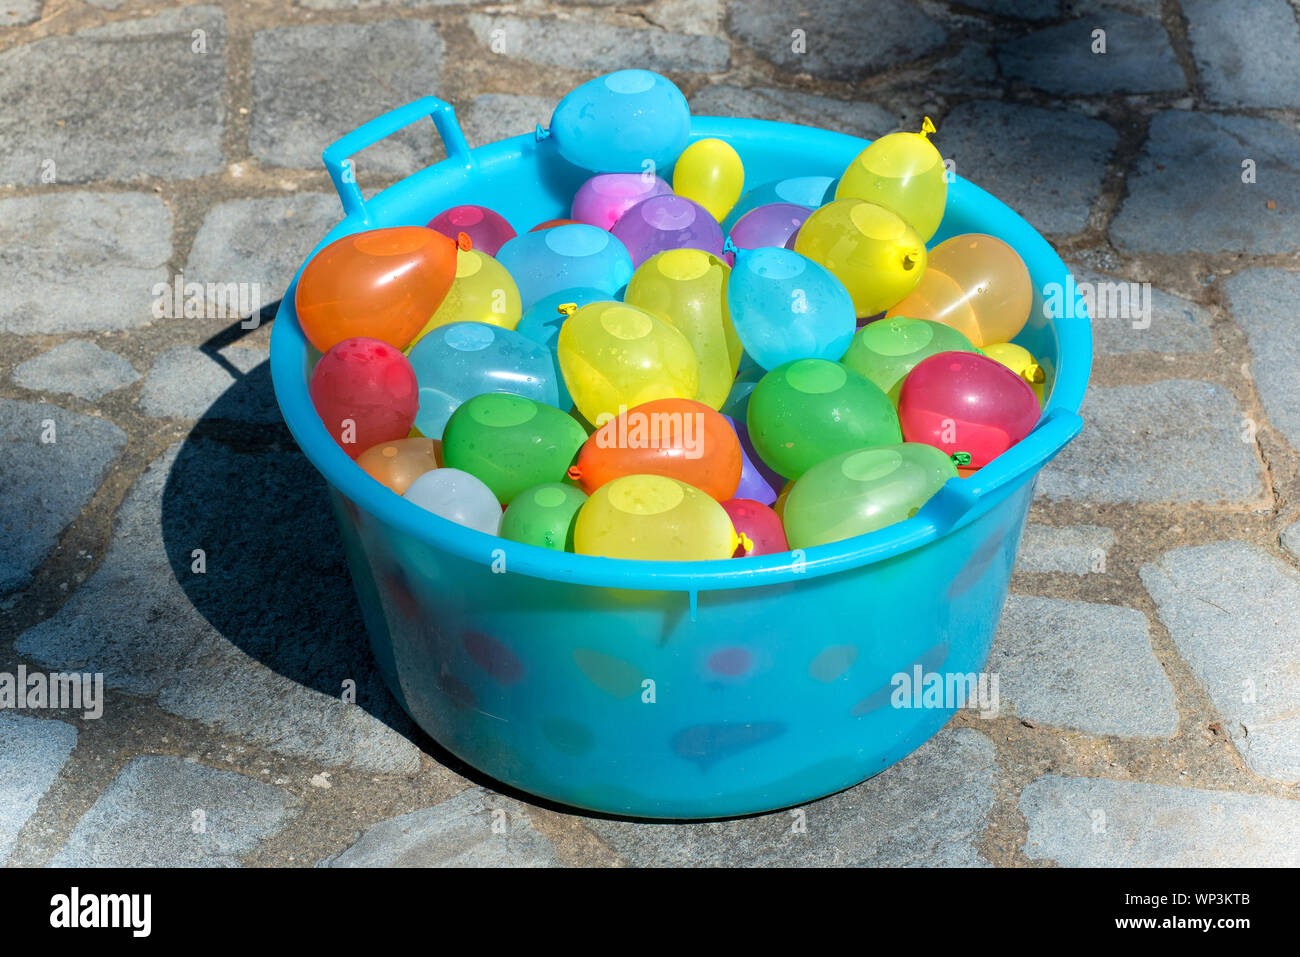 Cuve en plastique bleu rempli d'eau à base de bombes parti colorés ballons remplis avec de l'eau prêt pour un jeu pour enfants en plein air sur le pavage permanent Banque D'Images